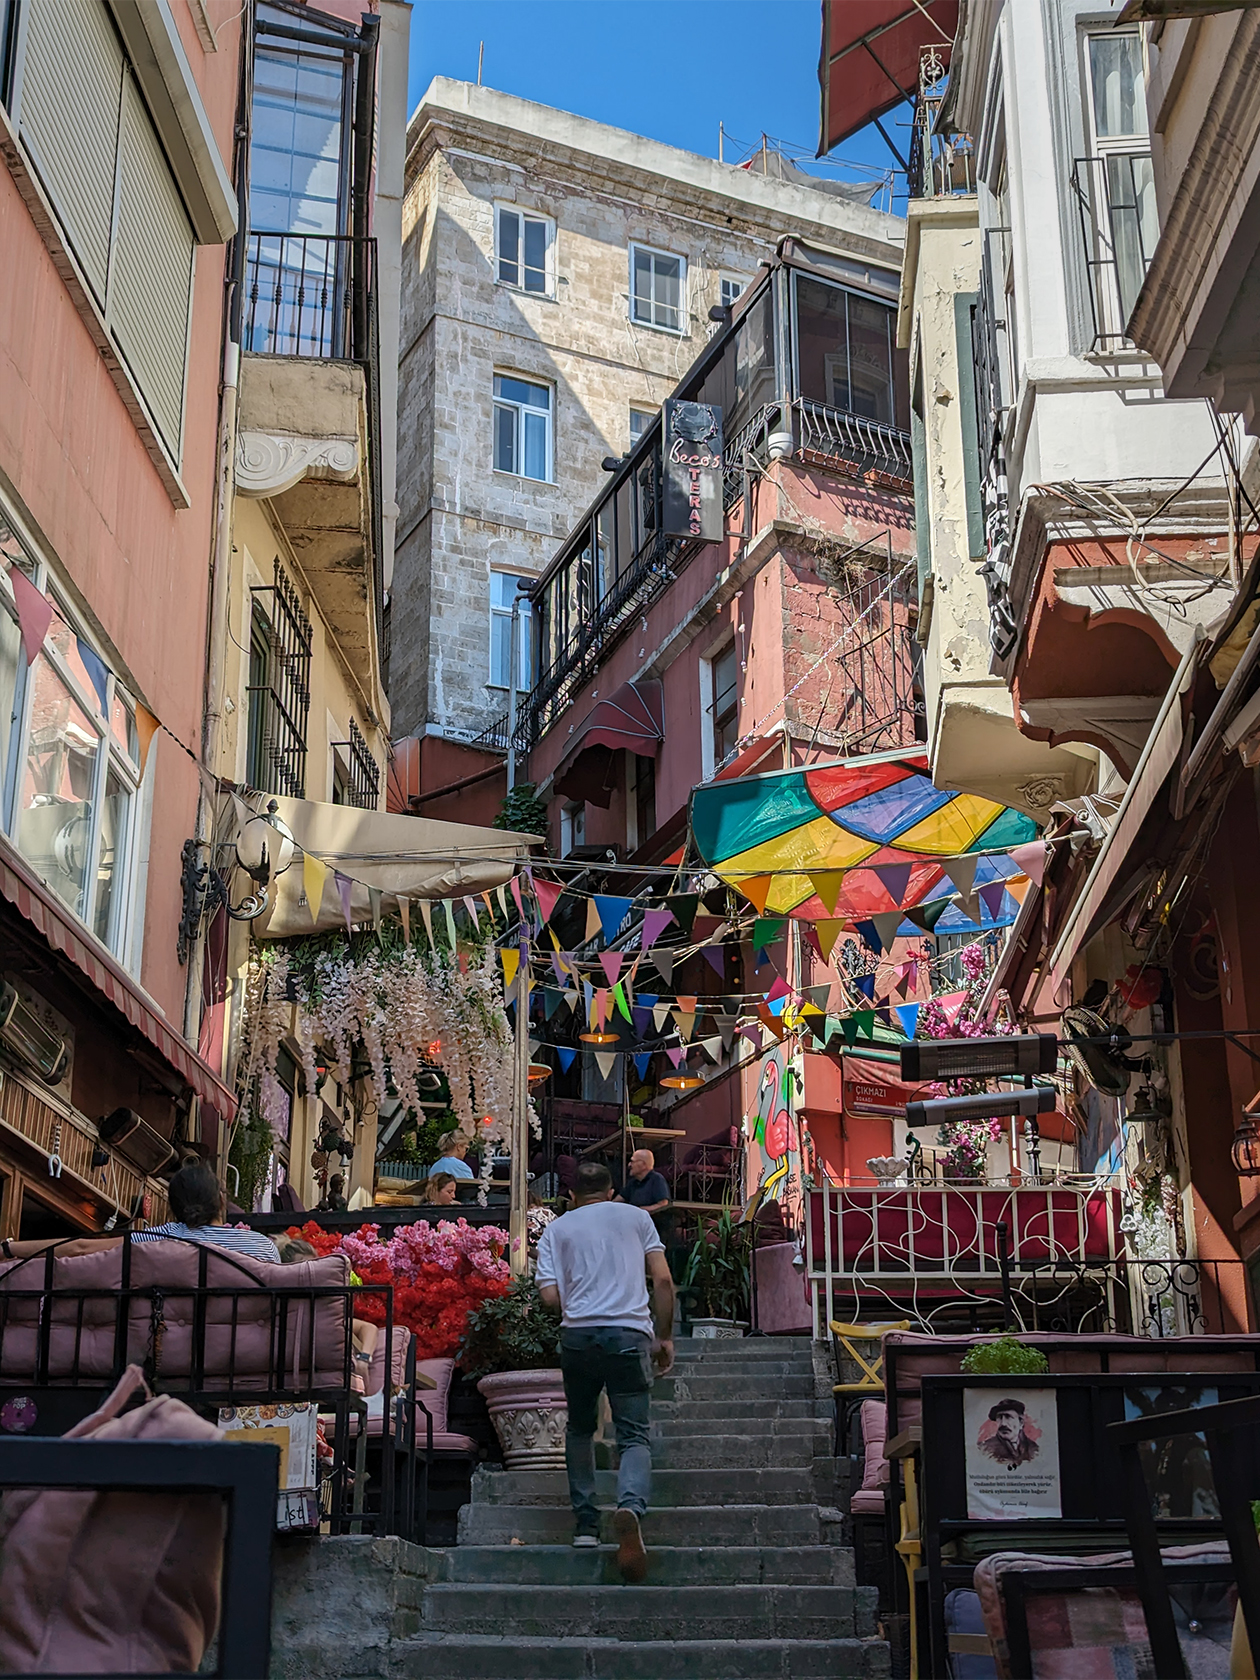 Прогулки по Стамбулу — постоянная смена траектории то вверх, то вниз. Если Москва на семи холмах, то Стамбул как будто на семидесяти. Если поедете, берите самую удобную обувь! Наиболее интересная архитектура — в европейской части города. Ее активно застраивали торговцы из Генуи